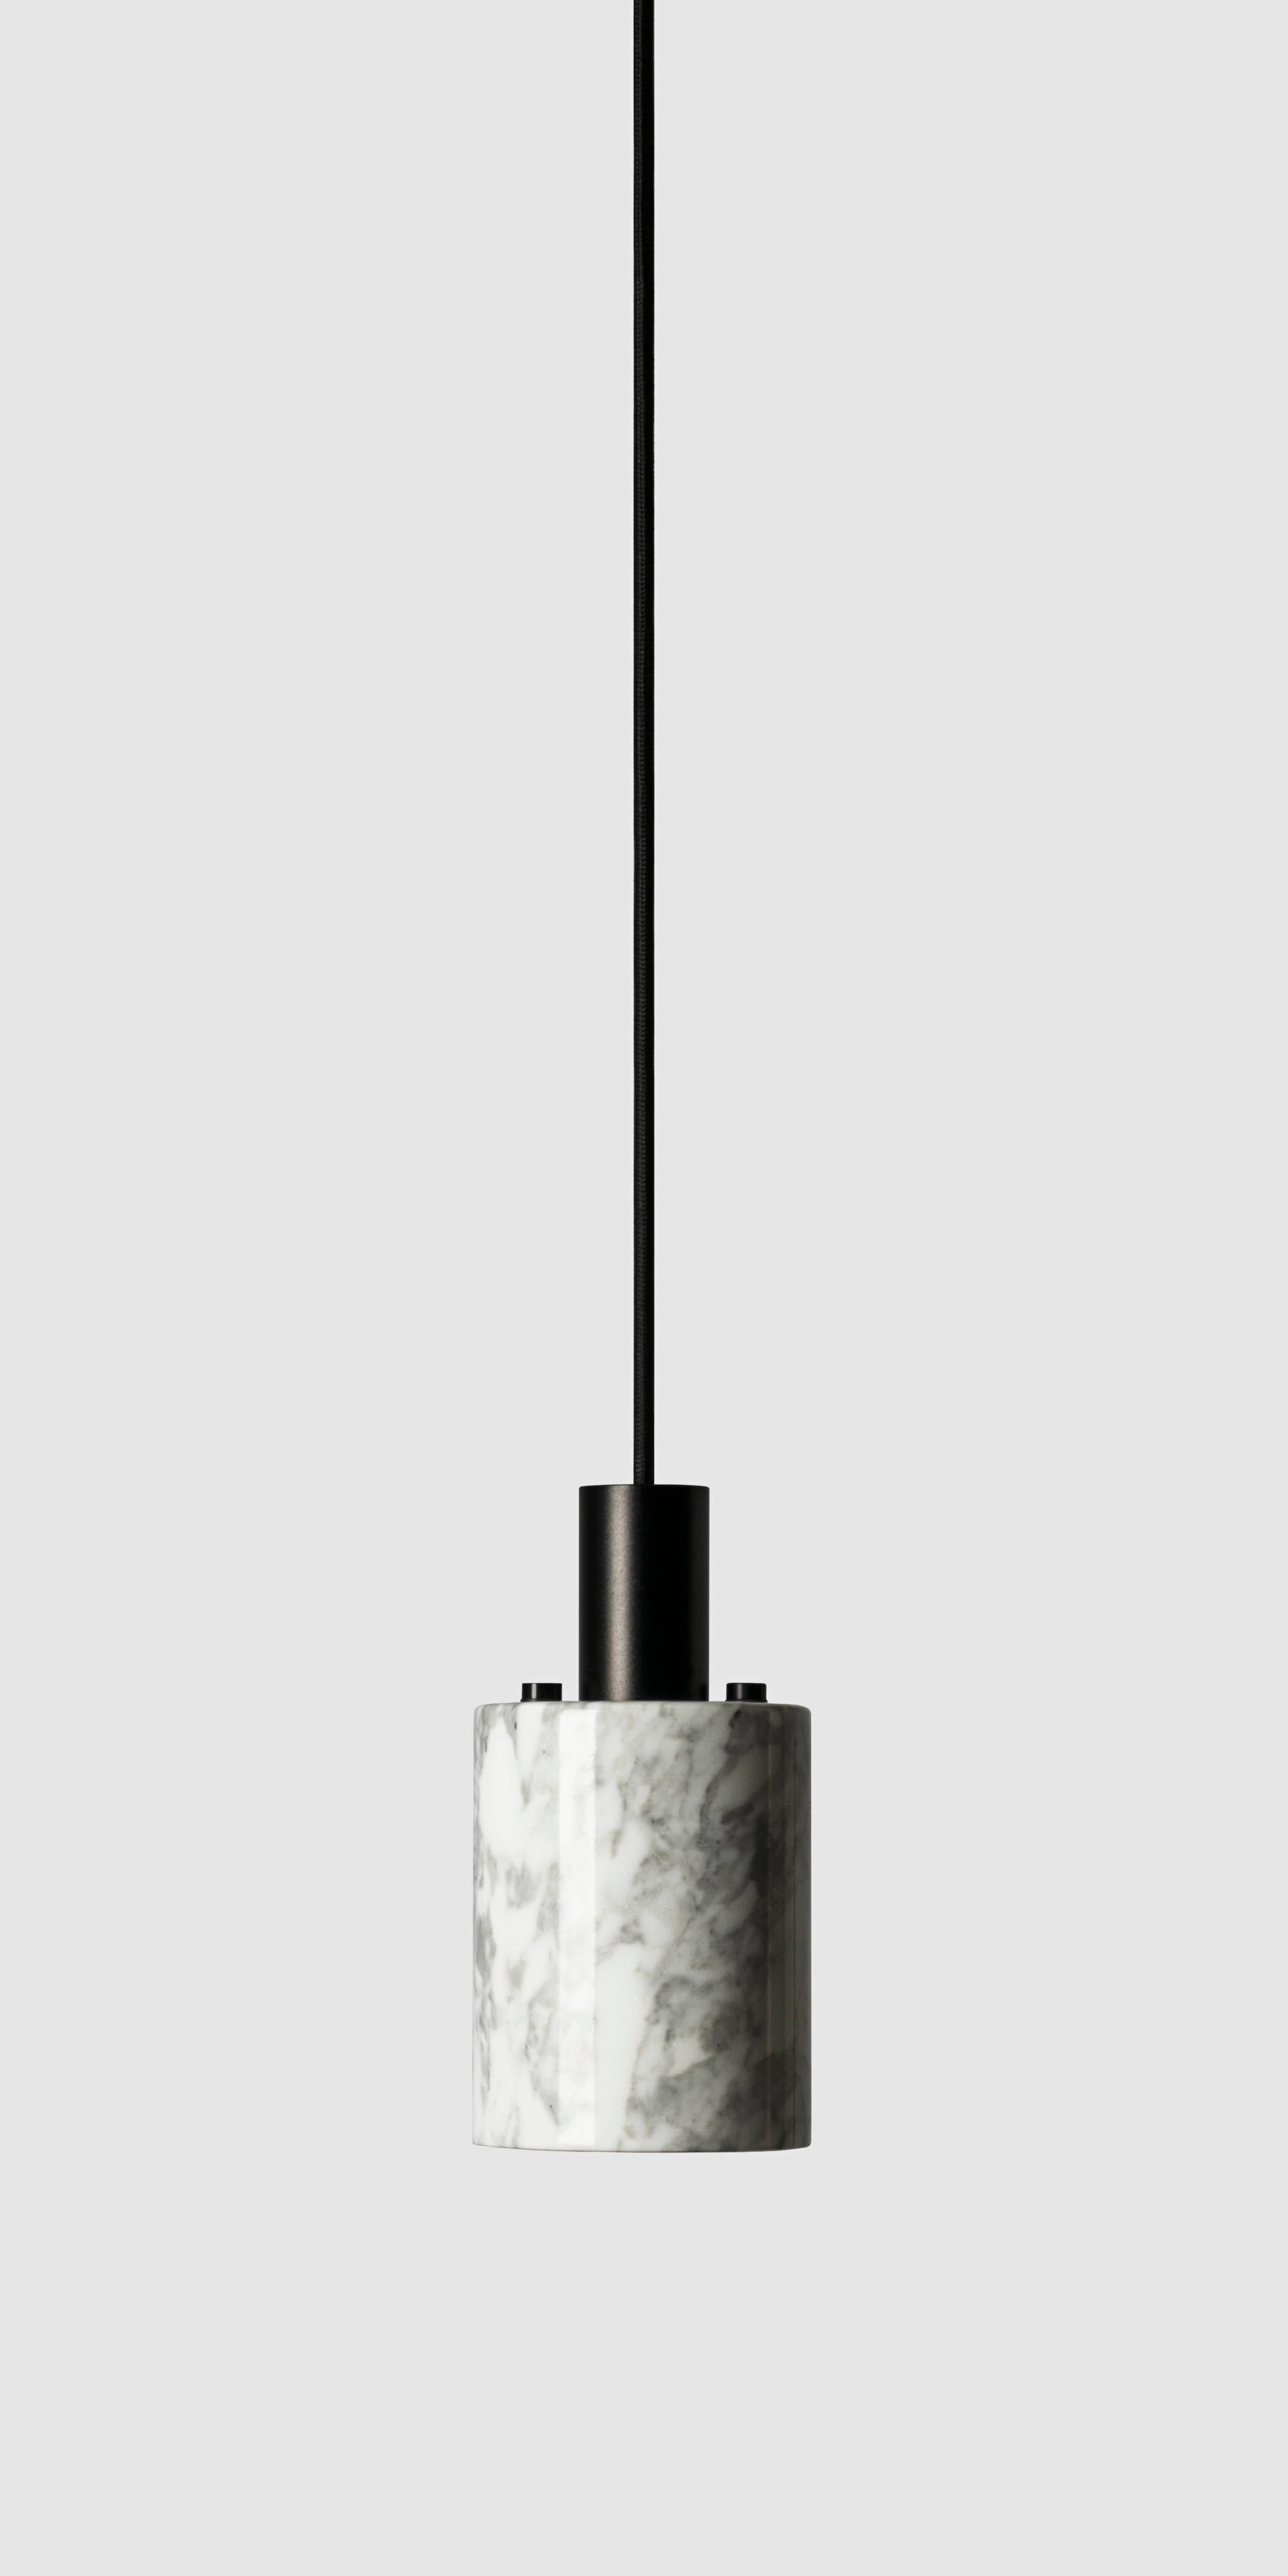 Hängeleuchten 'N' von Buzao x Bentu design.

Schwarzer Lavastein oder weißer Marmor
Schwarzes (Aluminium) oder goldenes (Messing) Finish

(einzeln erhältlich)

19.5 cm hoch, 10 cm Durchmesser
Kabel: 2 Meter schwarz (einstellbar) 

Typ der Lampe: E27